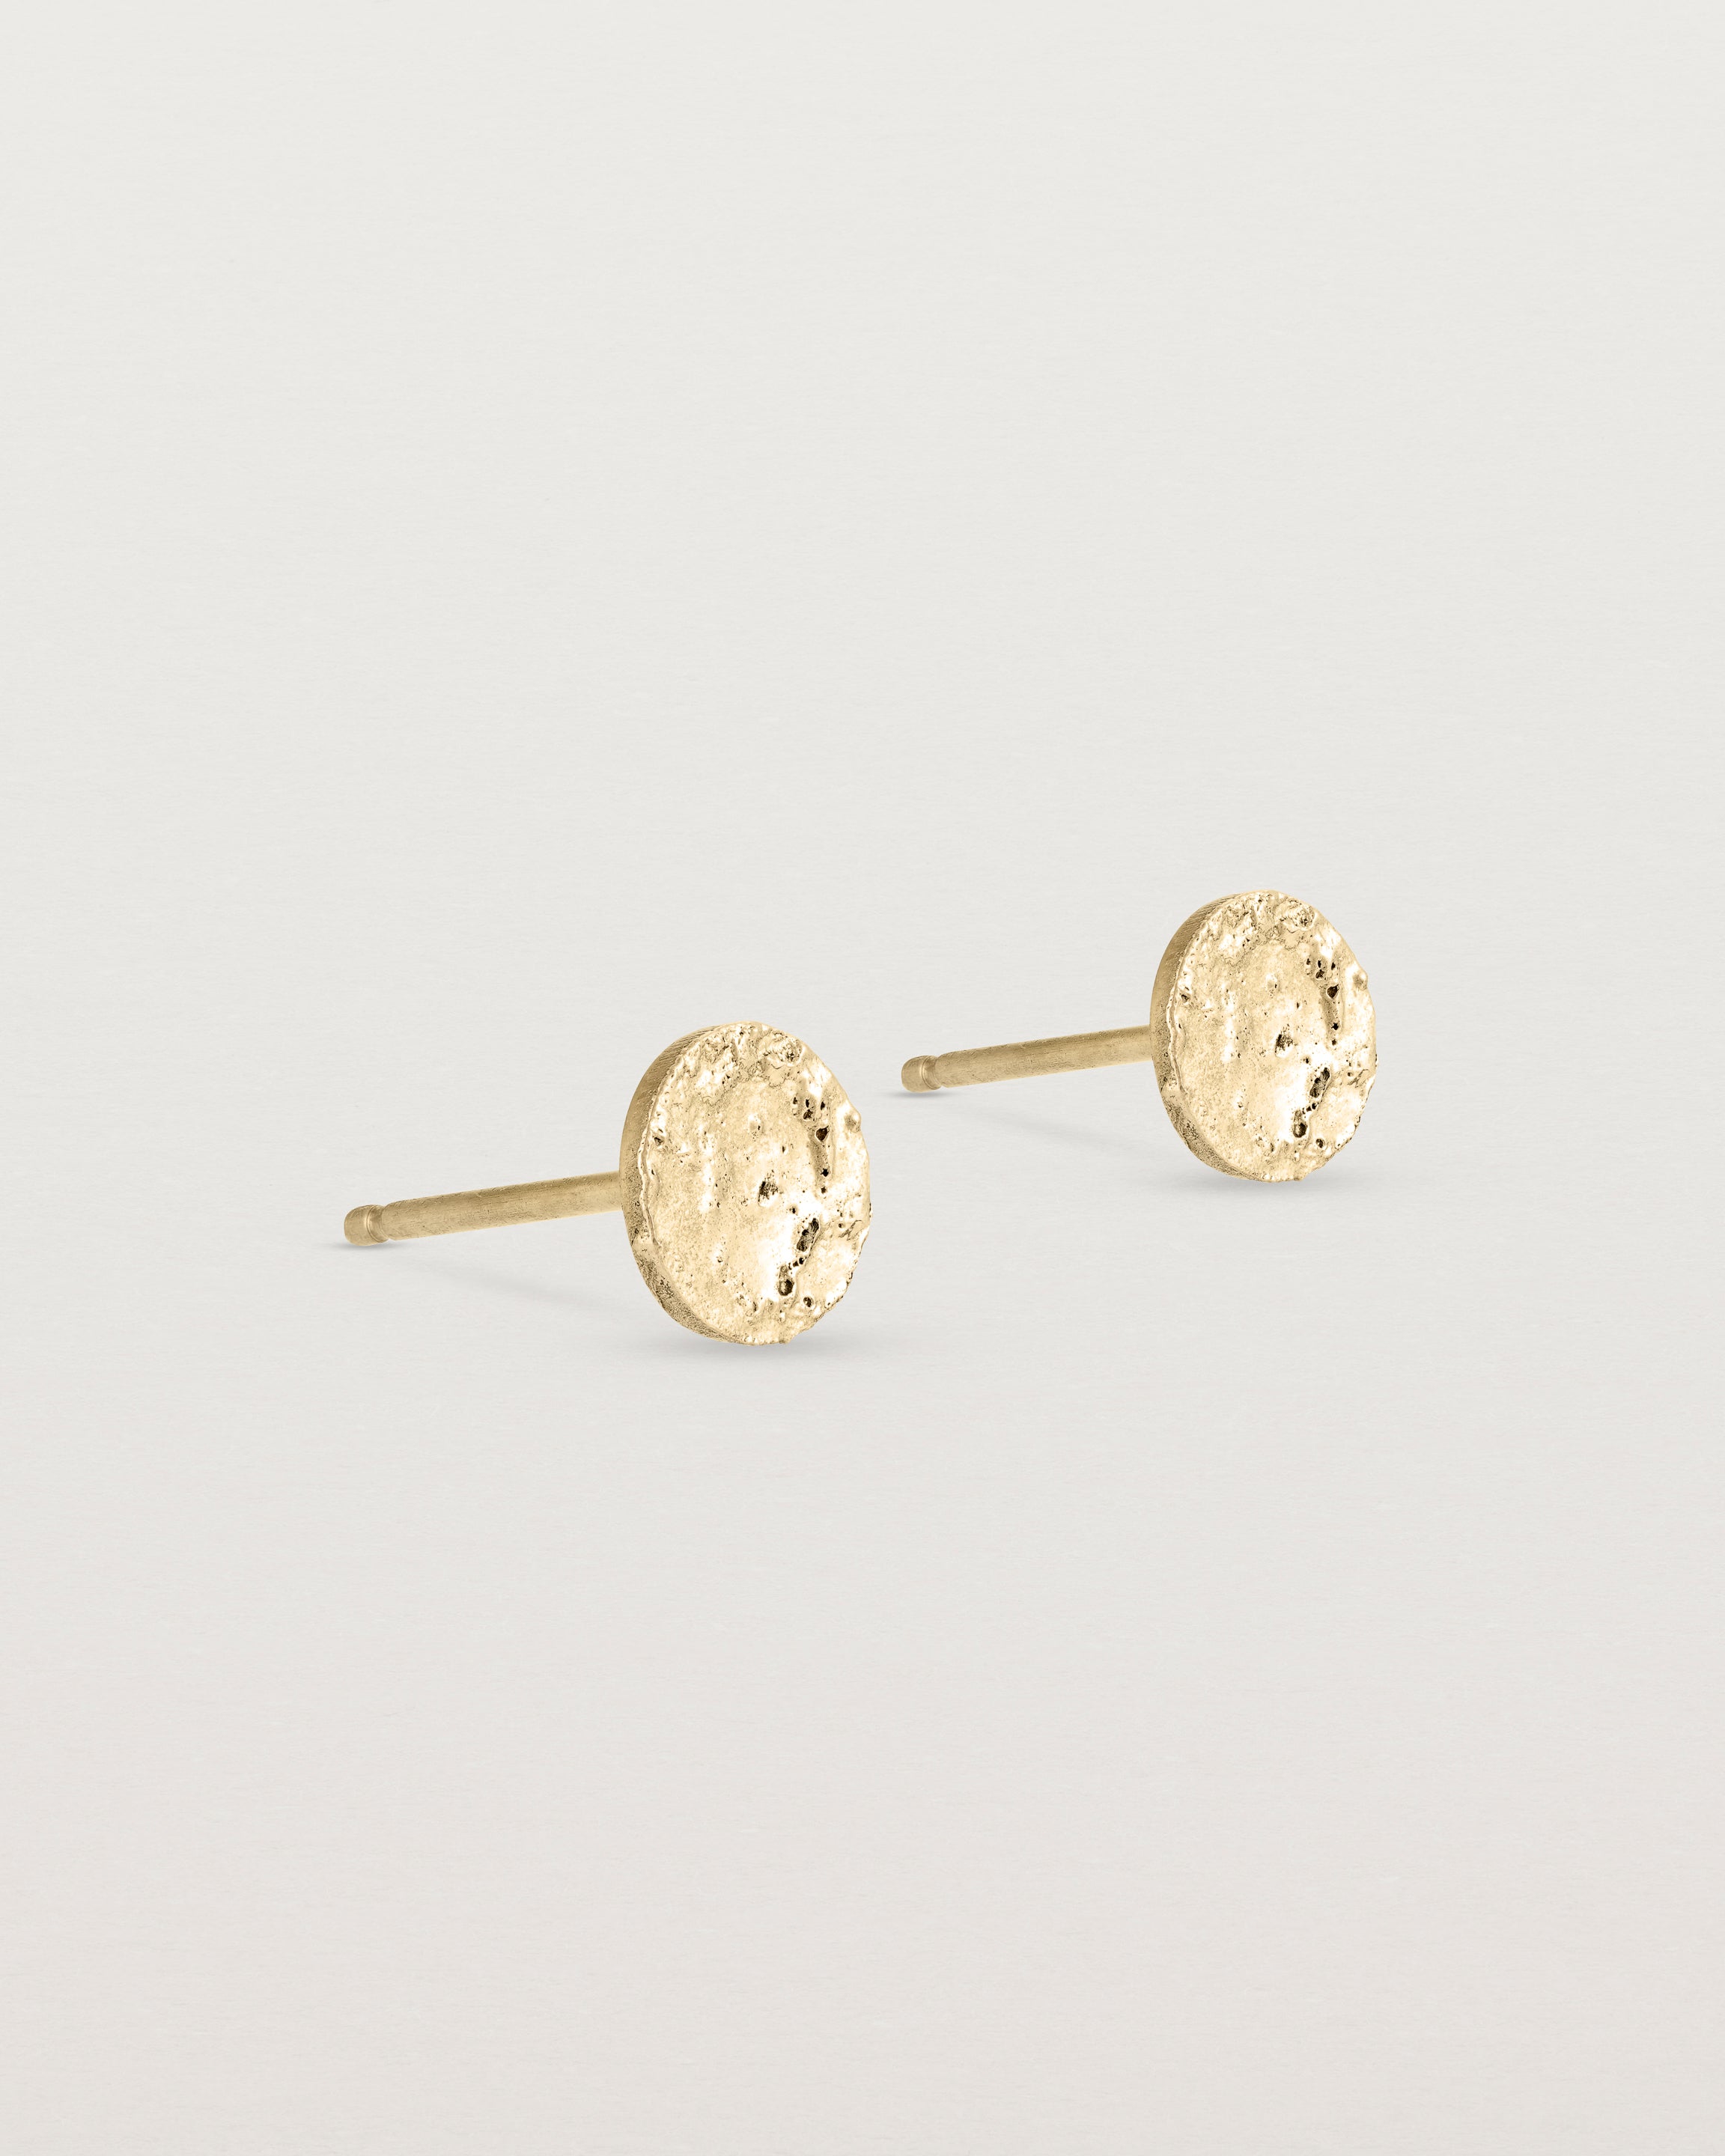 A pair of textured circular yellow gold studs